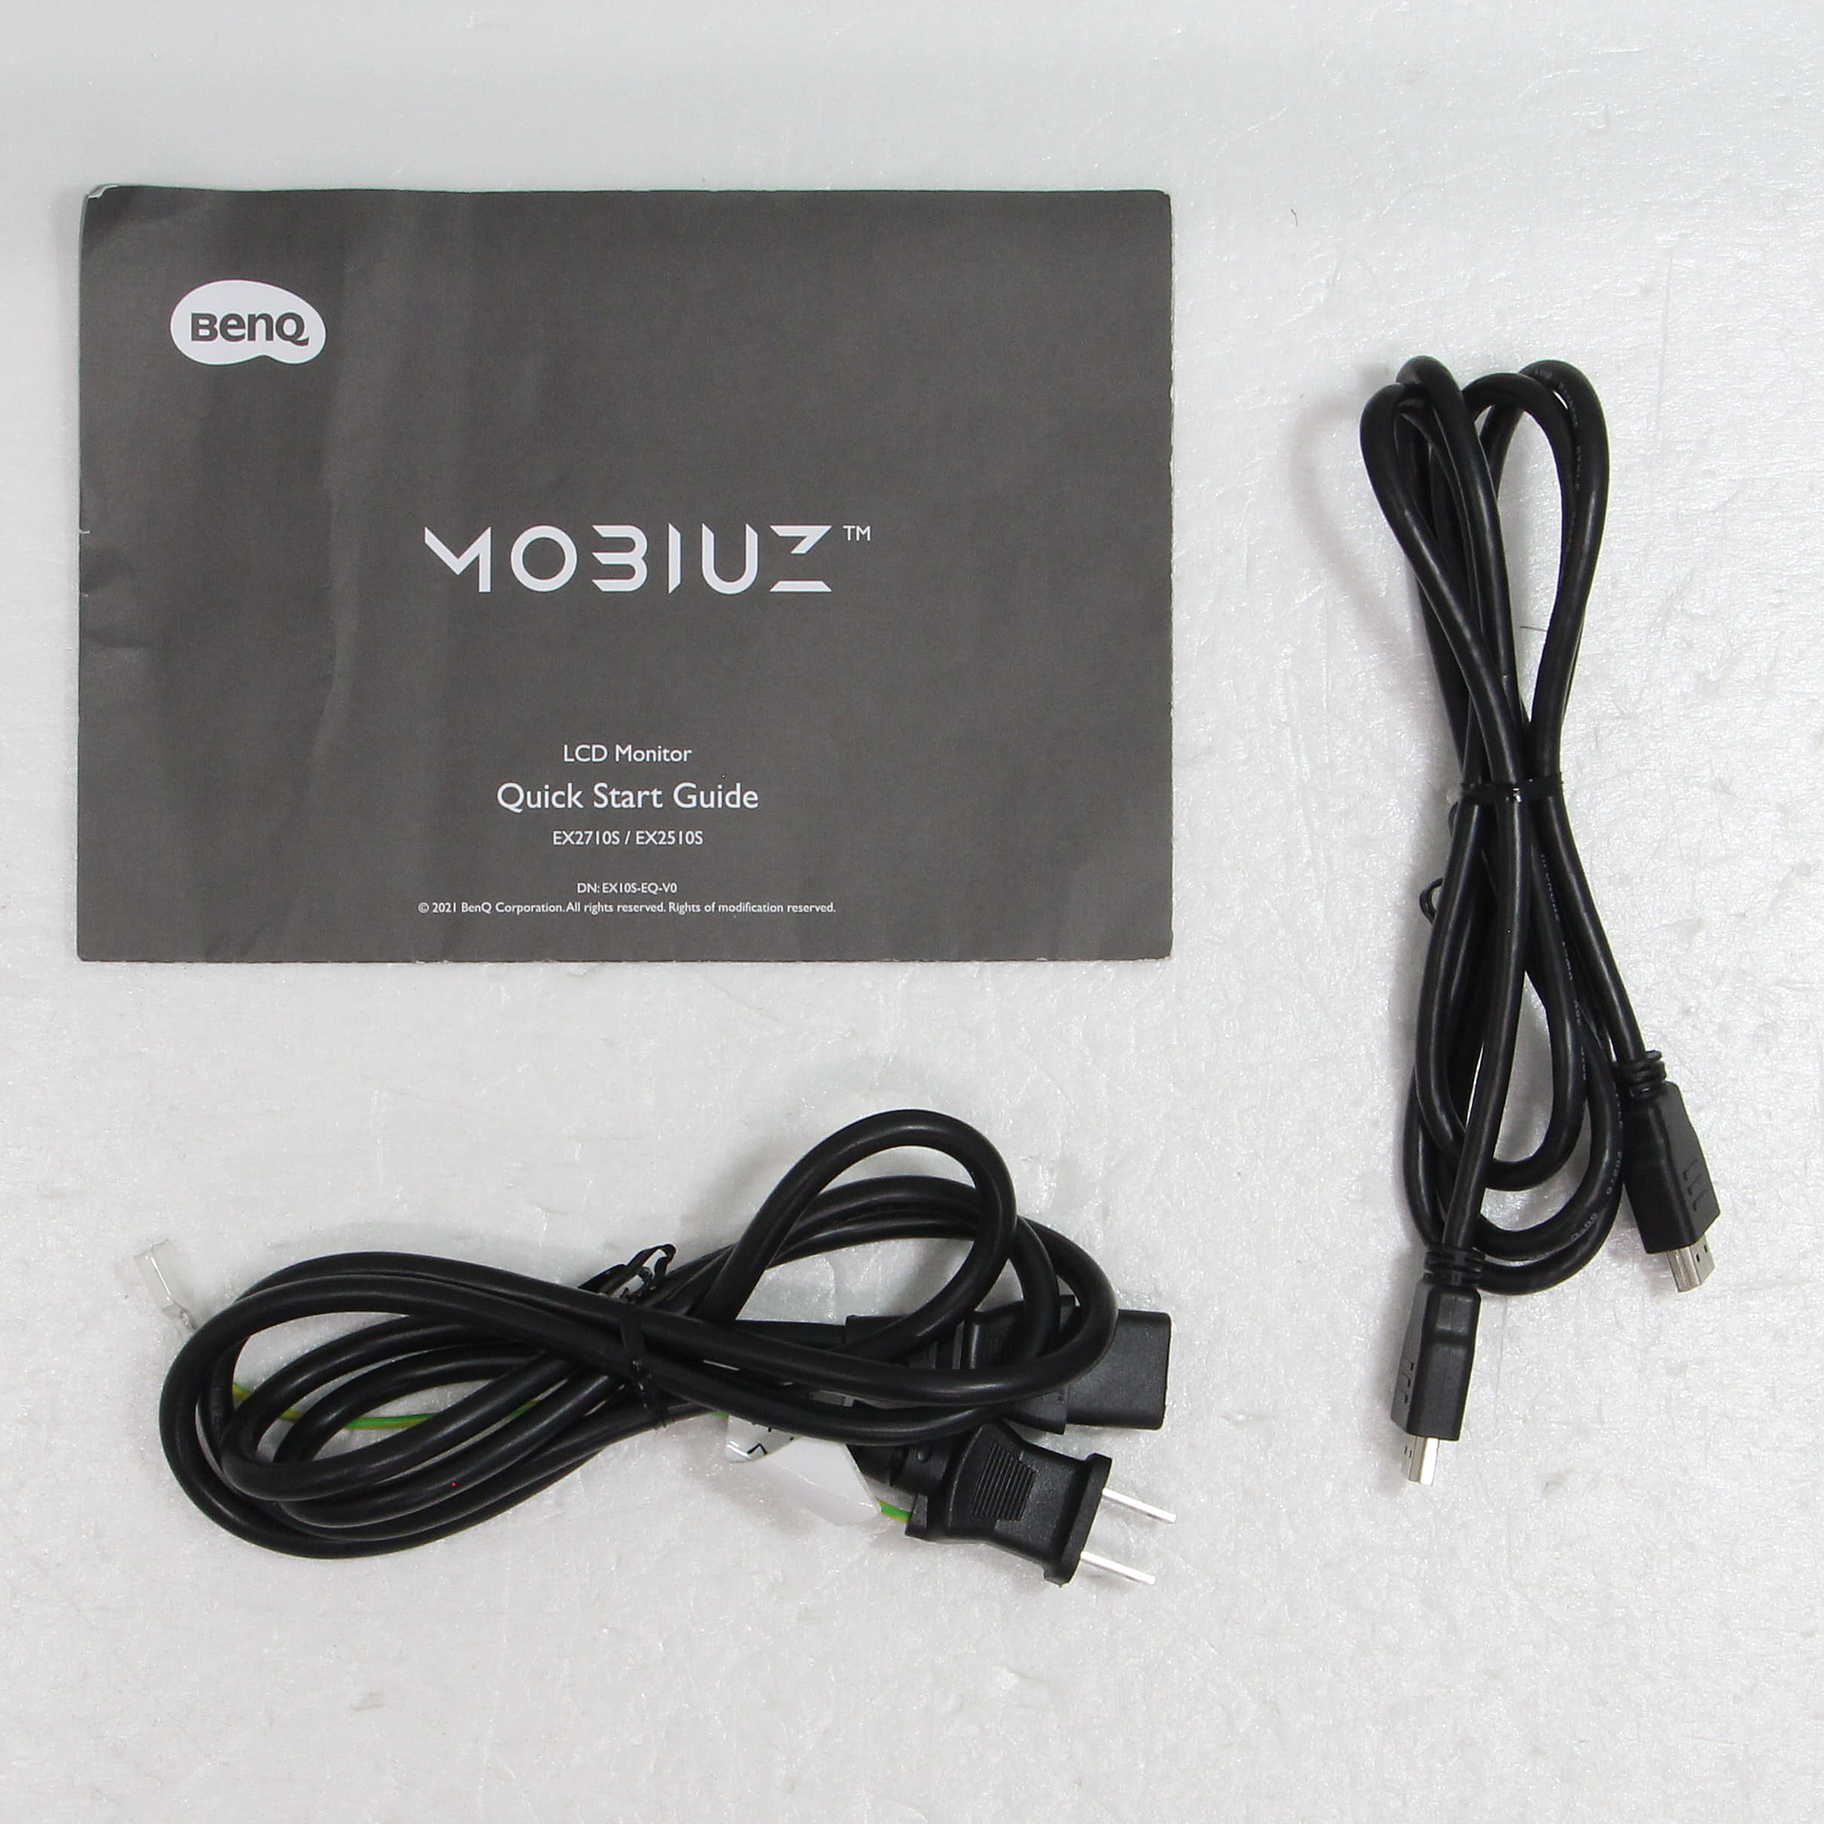 EX2710Sモニター HDMIケーブル 電源コード-